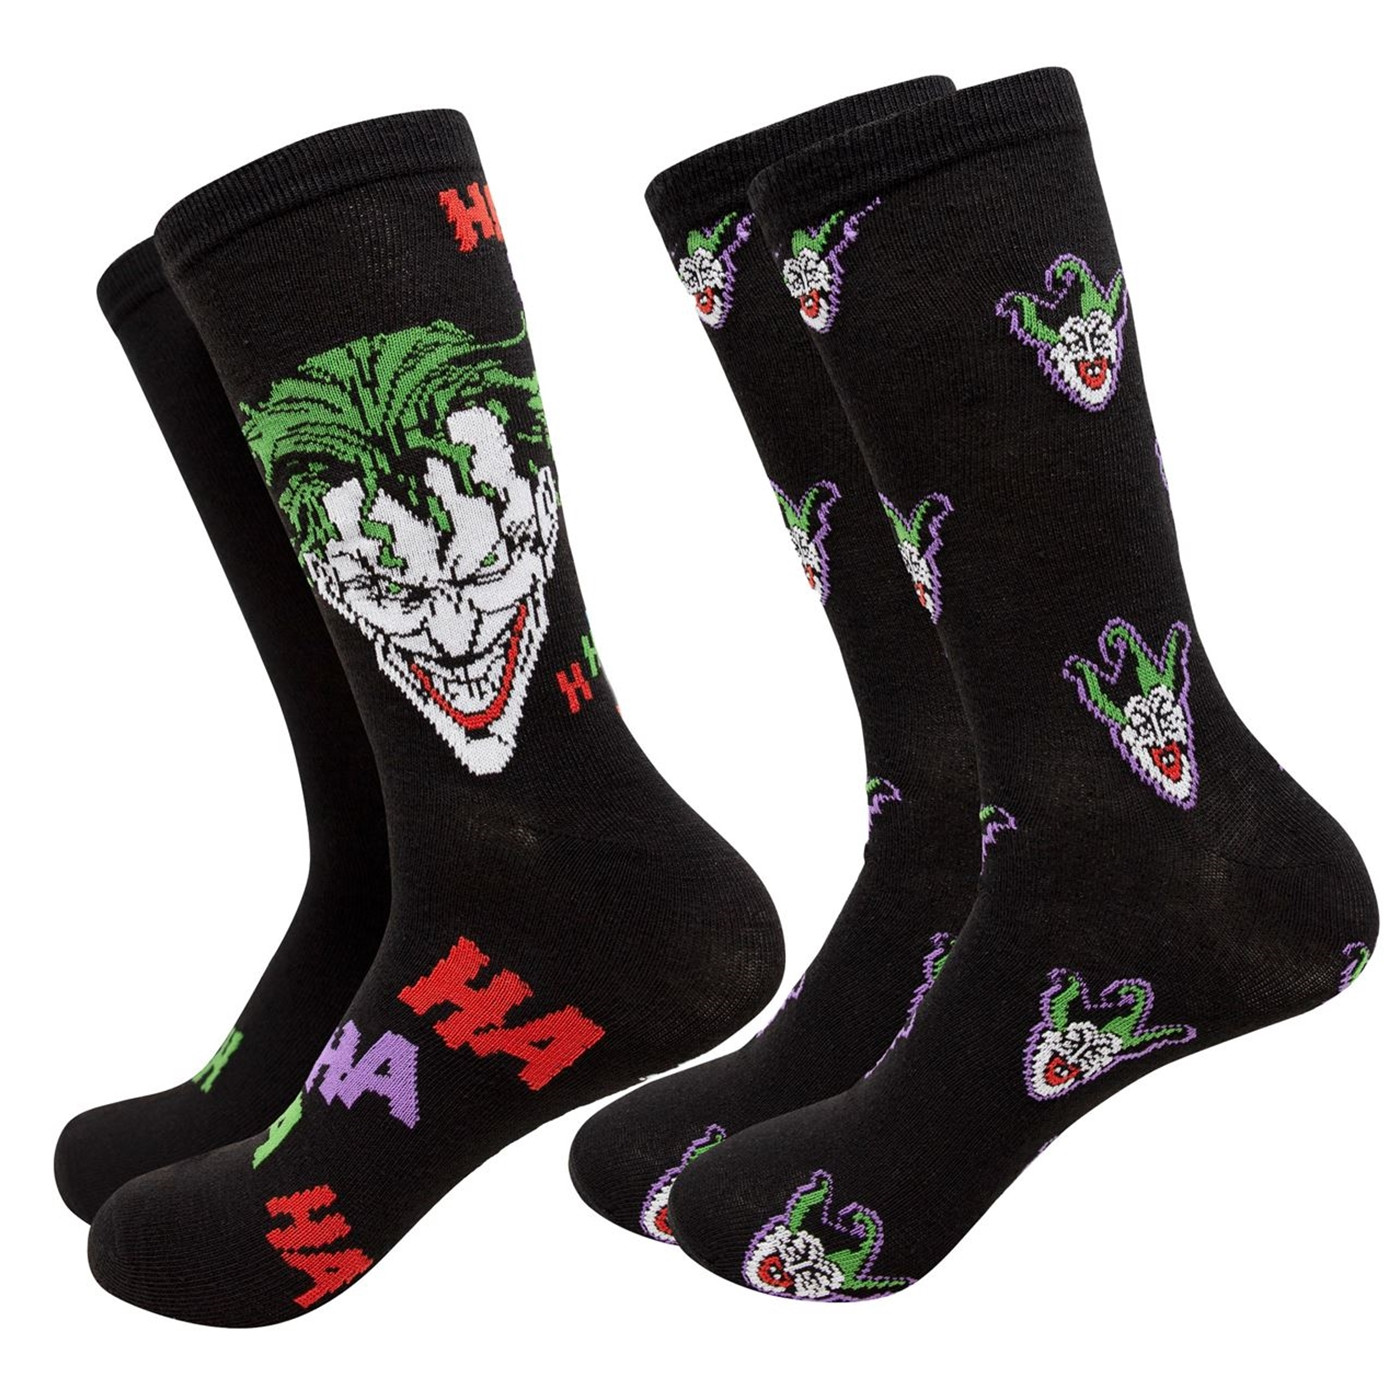 Joker Haha and Faces Men's 2-Pack Crew Socks